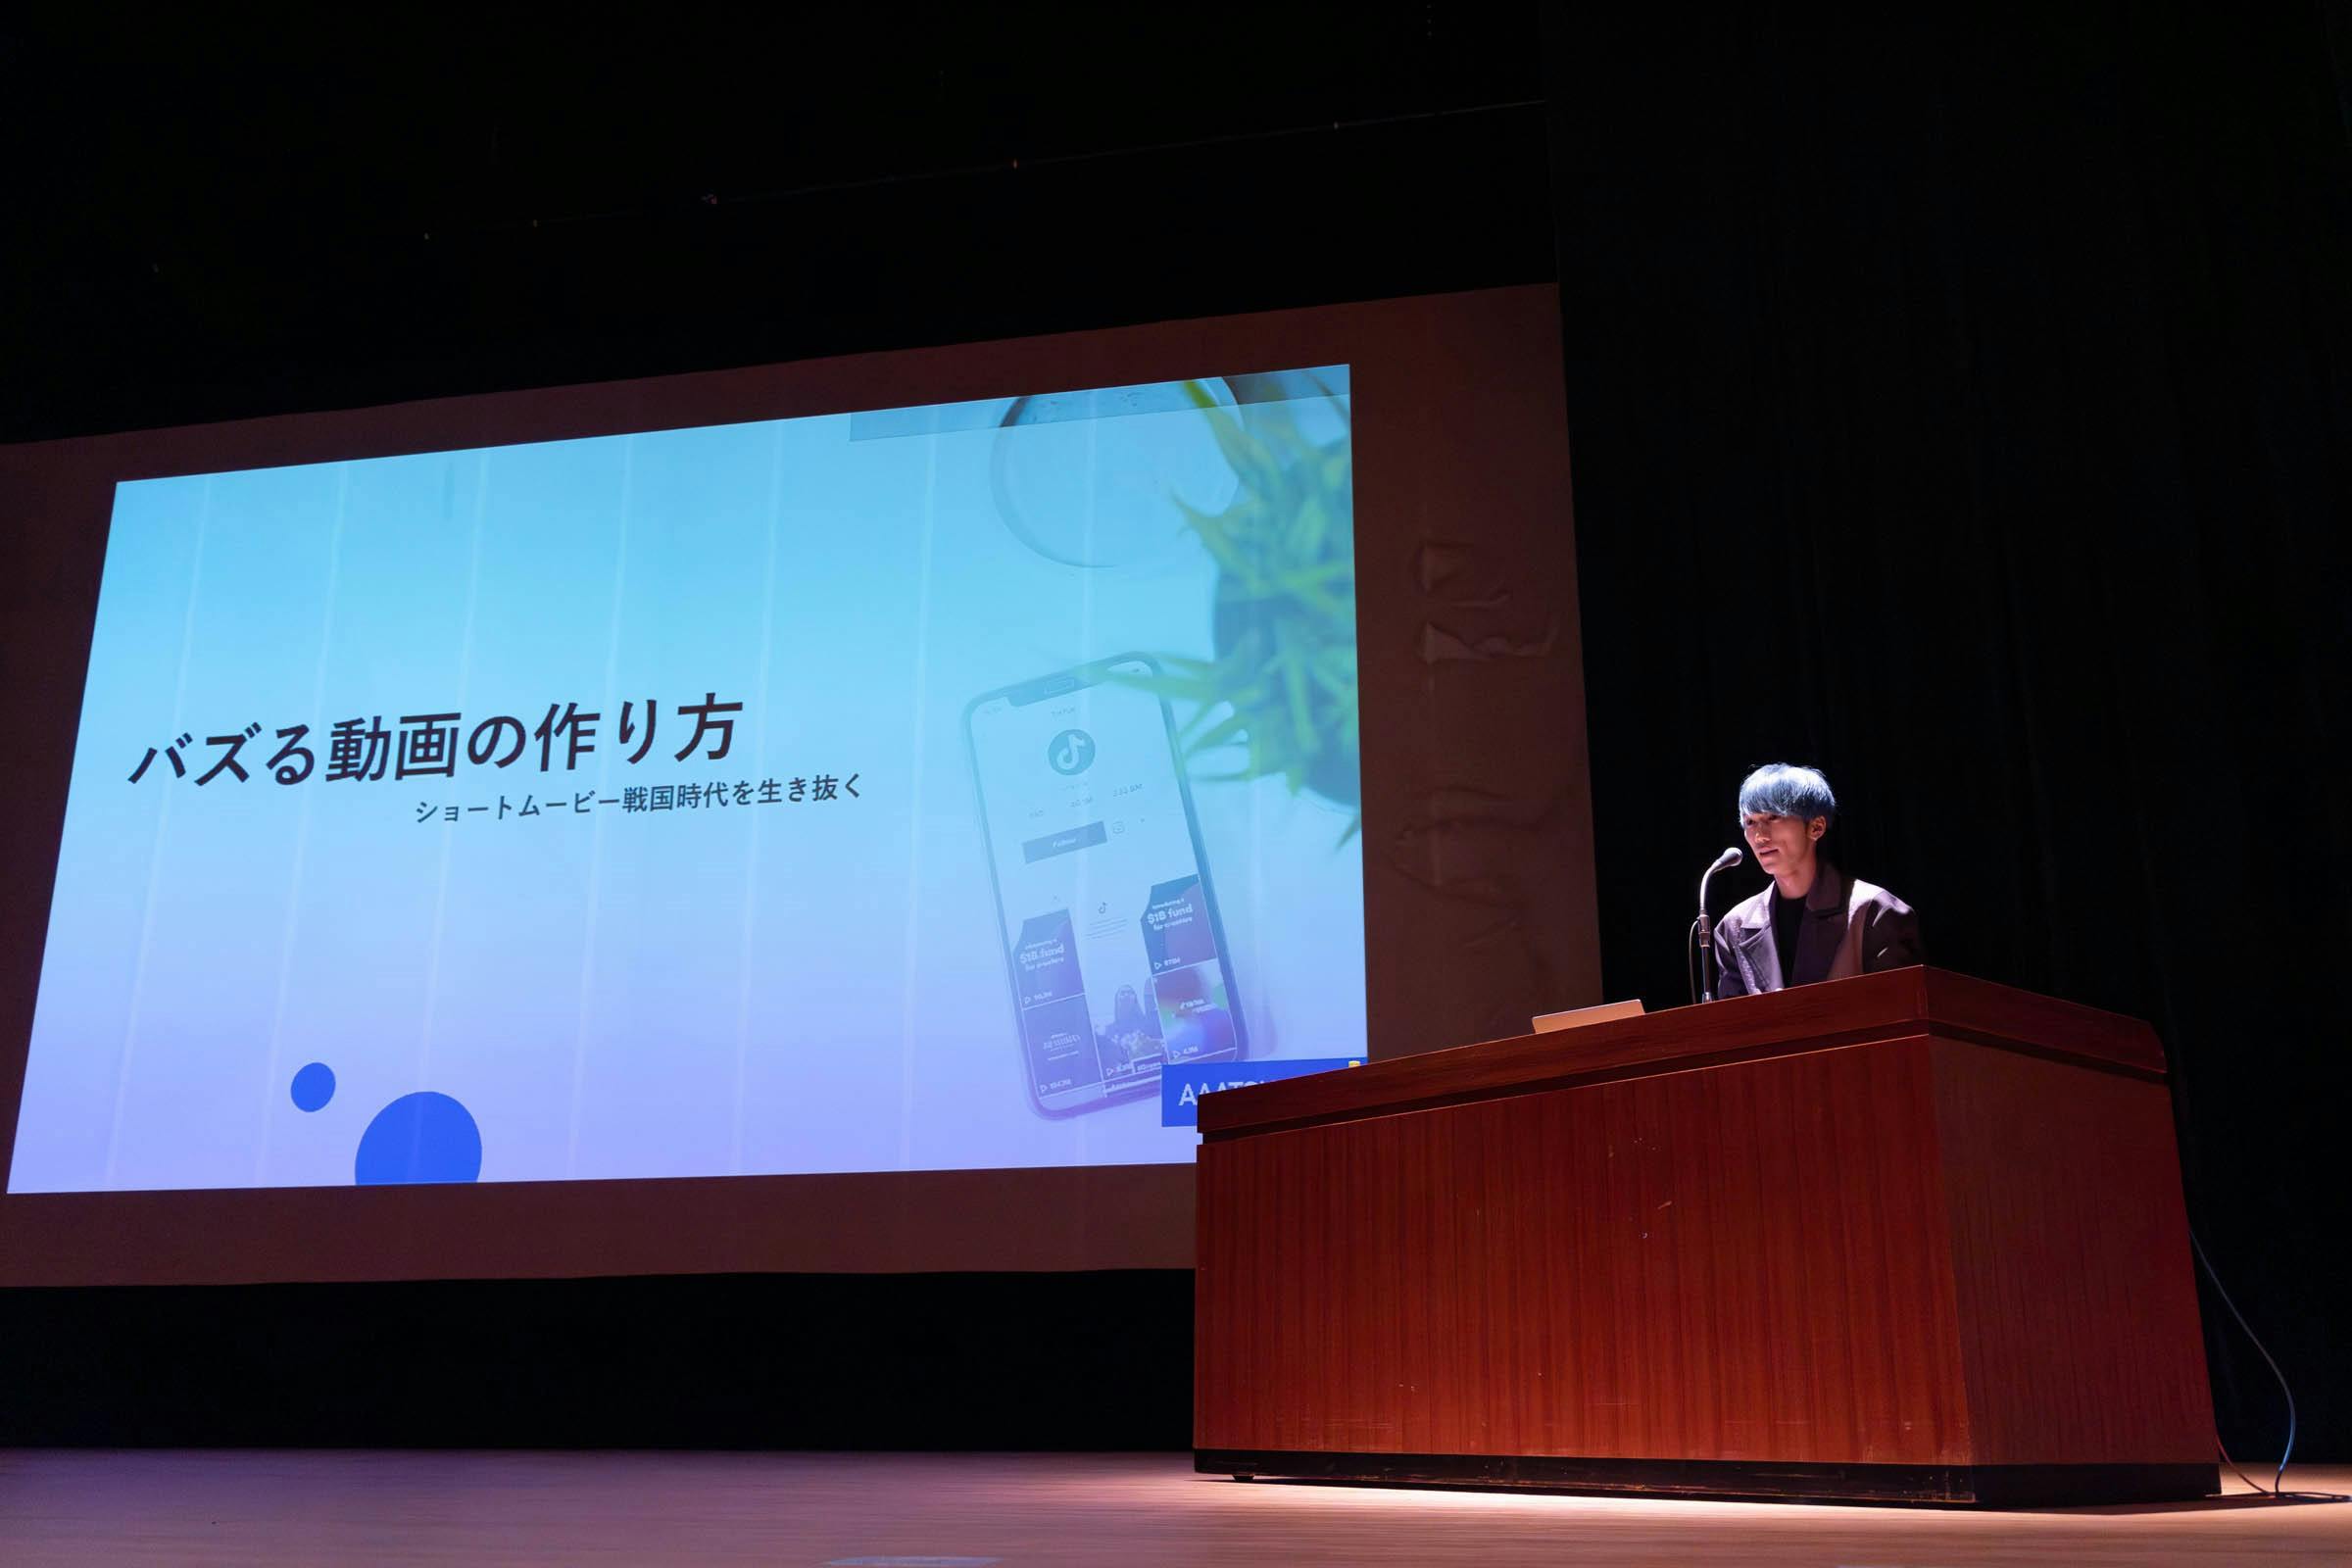 TikTokがサポートし、佐賀県教育委員会が人気TikTokクリエイター「あああつし」を招いて実施した中高生向けショートムービー制作セミナーより、バズる動画の作り方を一部ご紹介！